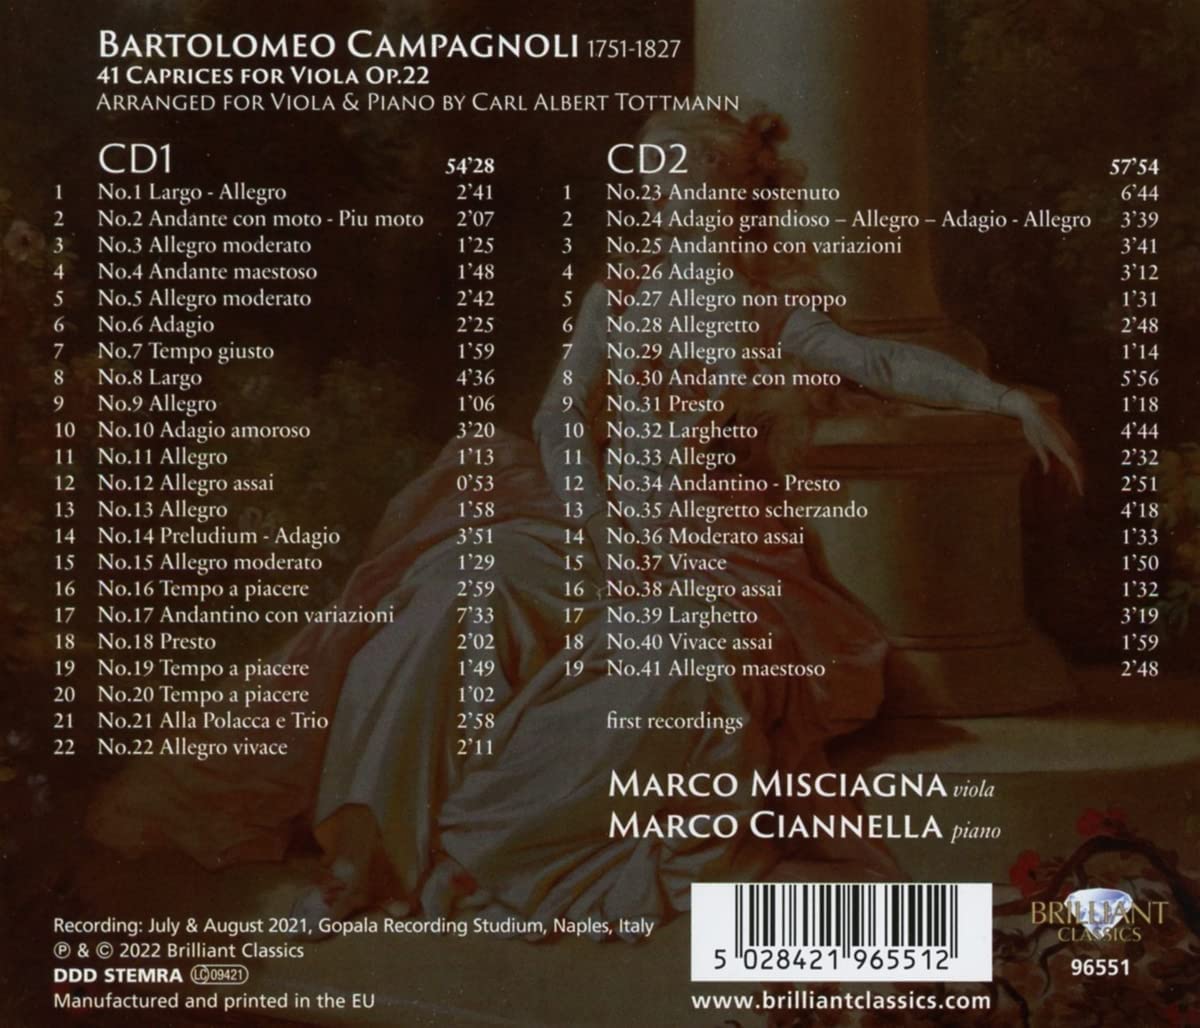 바르톨로메오 캄파뇰리: 비올라를 위한 41개의 카프리스 (Bartolomeo Campagnoli: 41 Caprices for Viola Op.22)